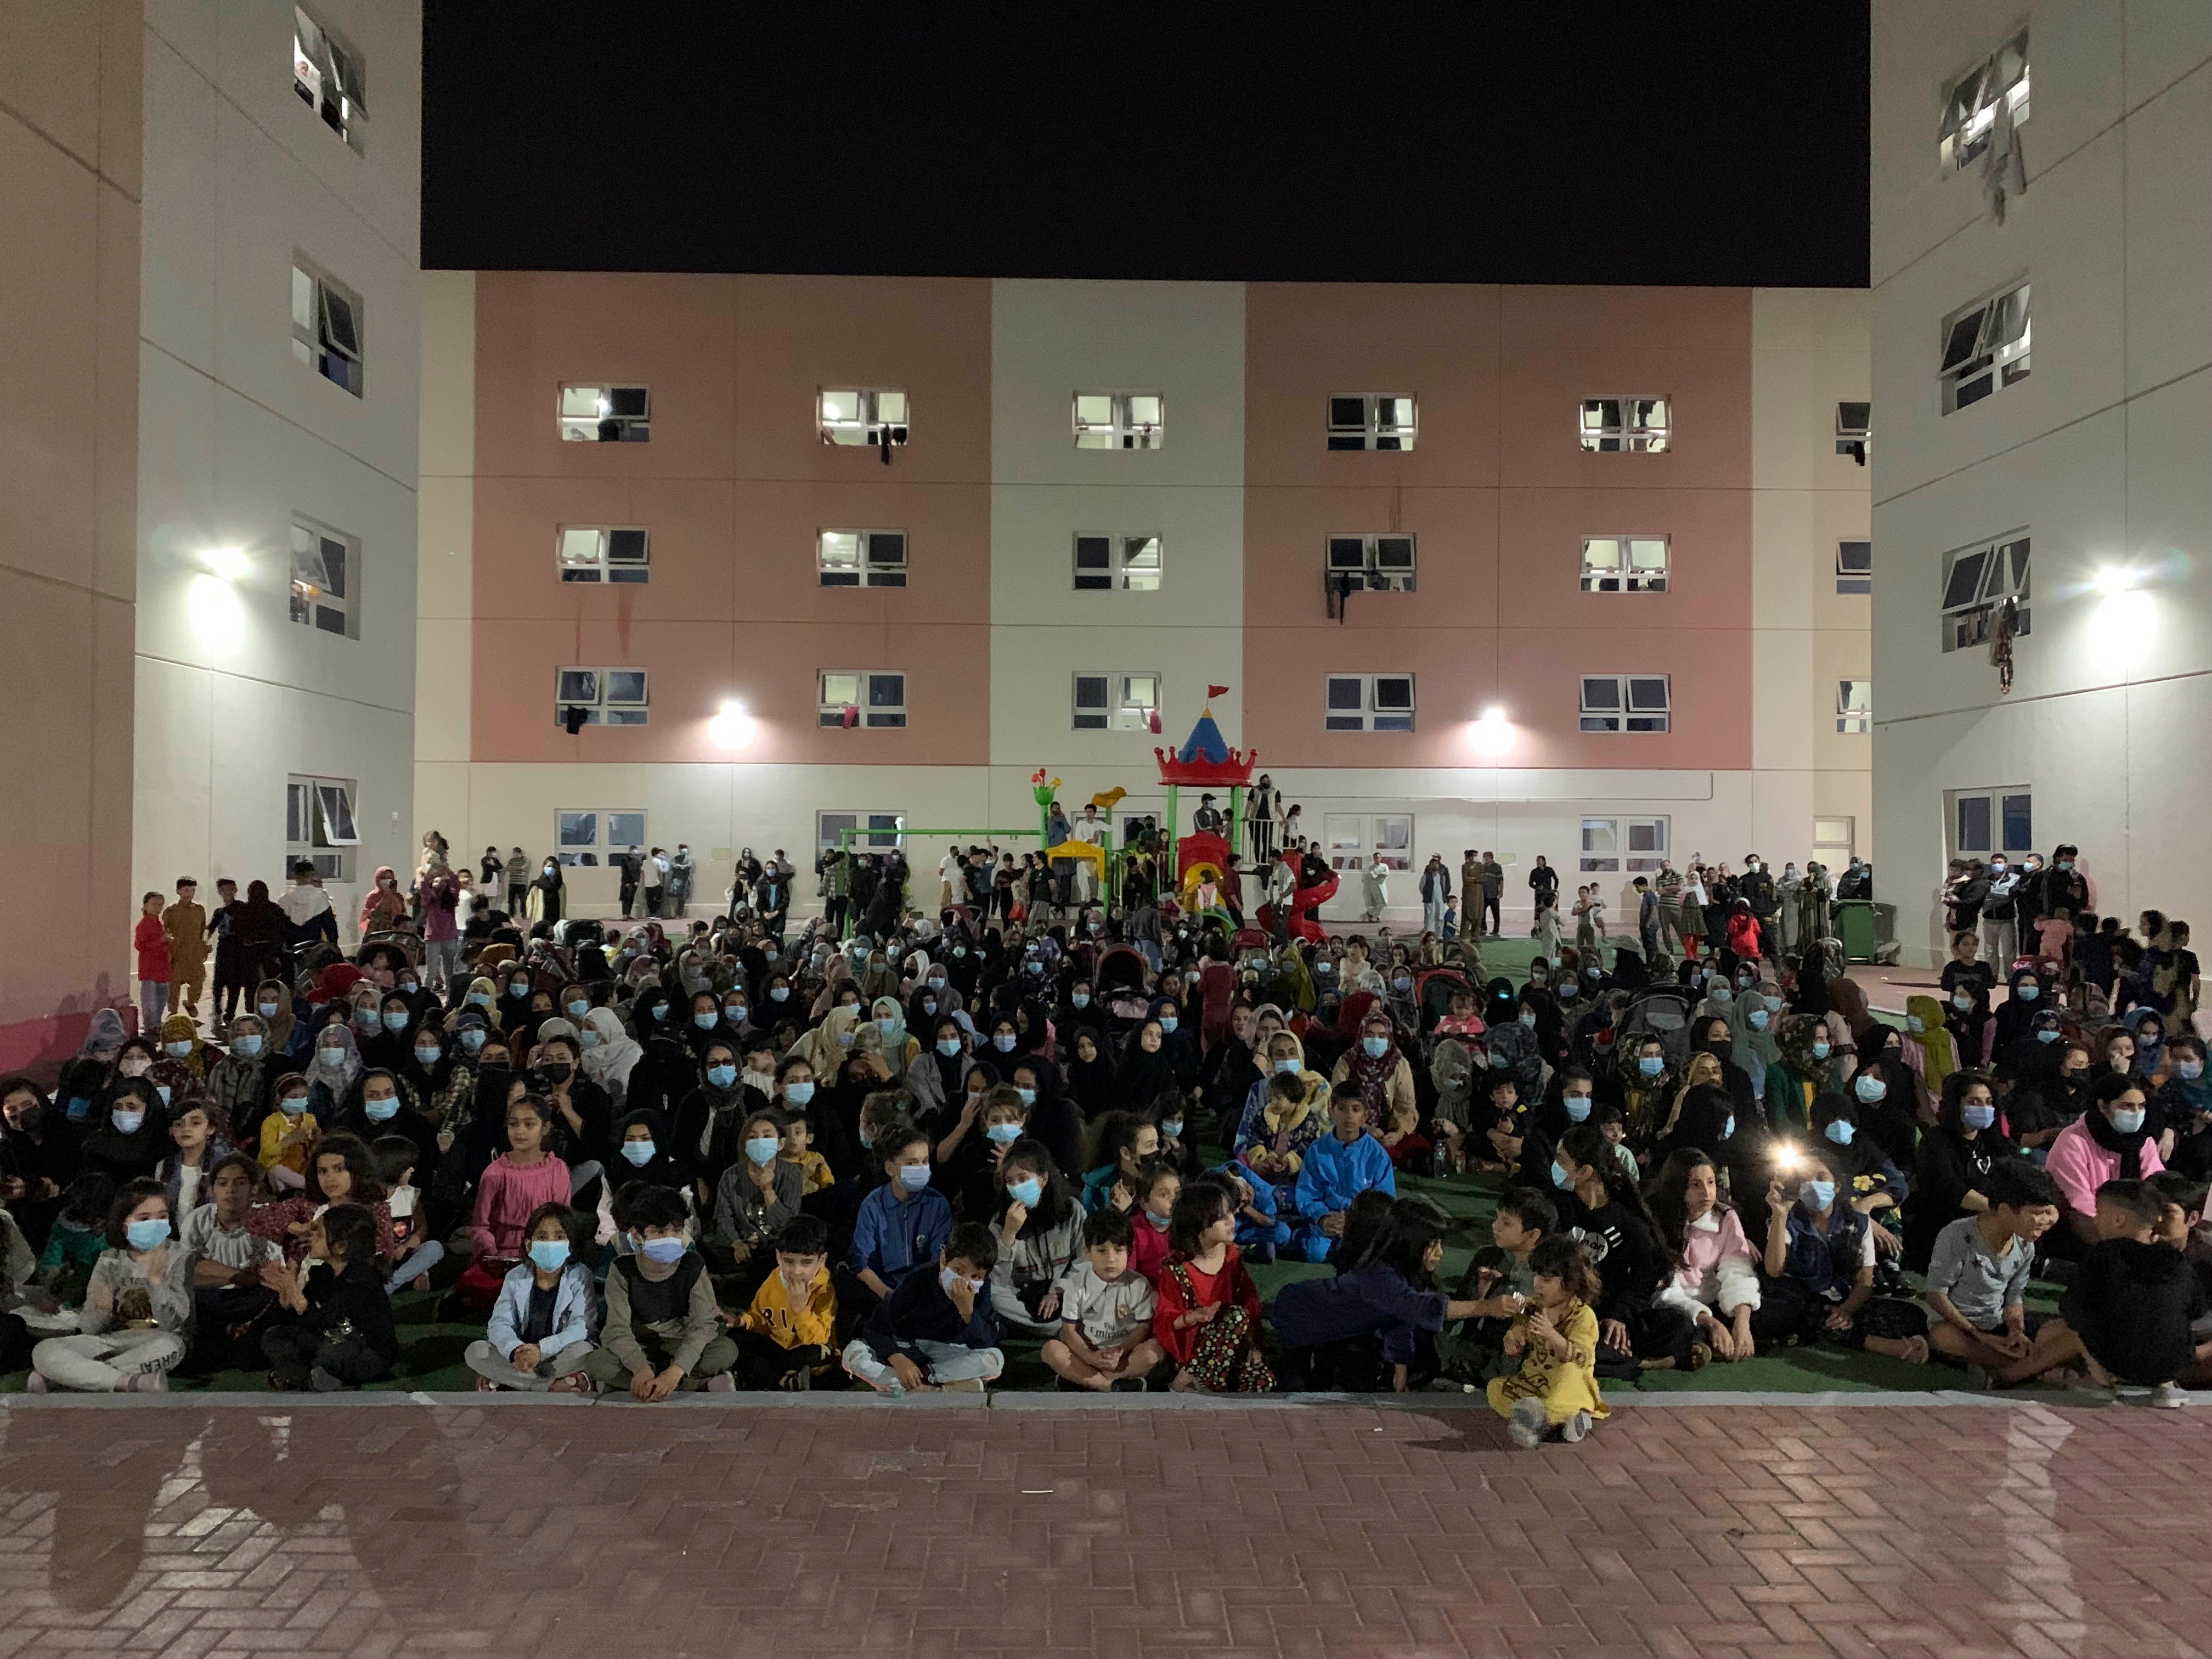 أفغان يتجمّعون في مخيم للاجئين الأفغان في العاصمة الإماراتية أبو ظبي احتجاجا على عدم نقلهم إلى الولايات المتحدة، 13 فبراير/شباط 2022.